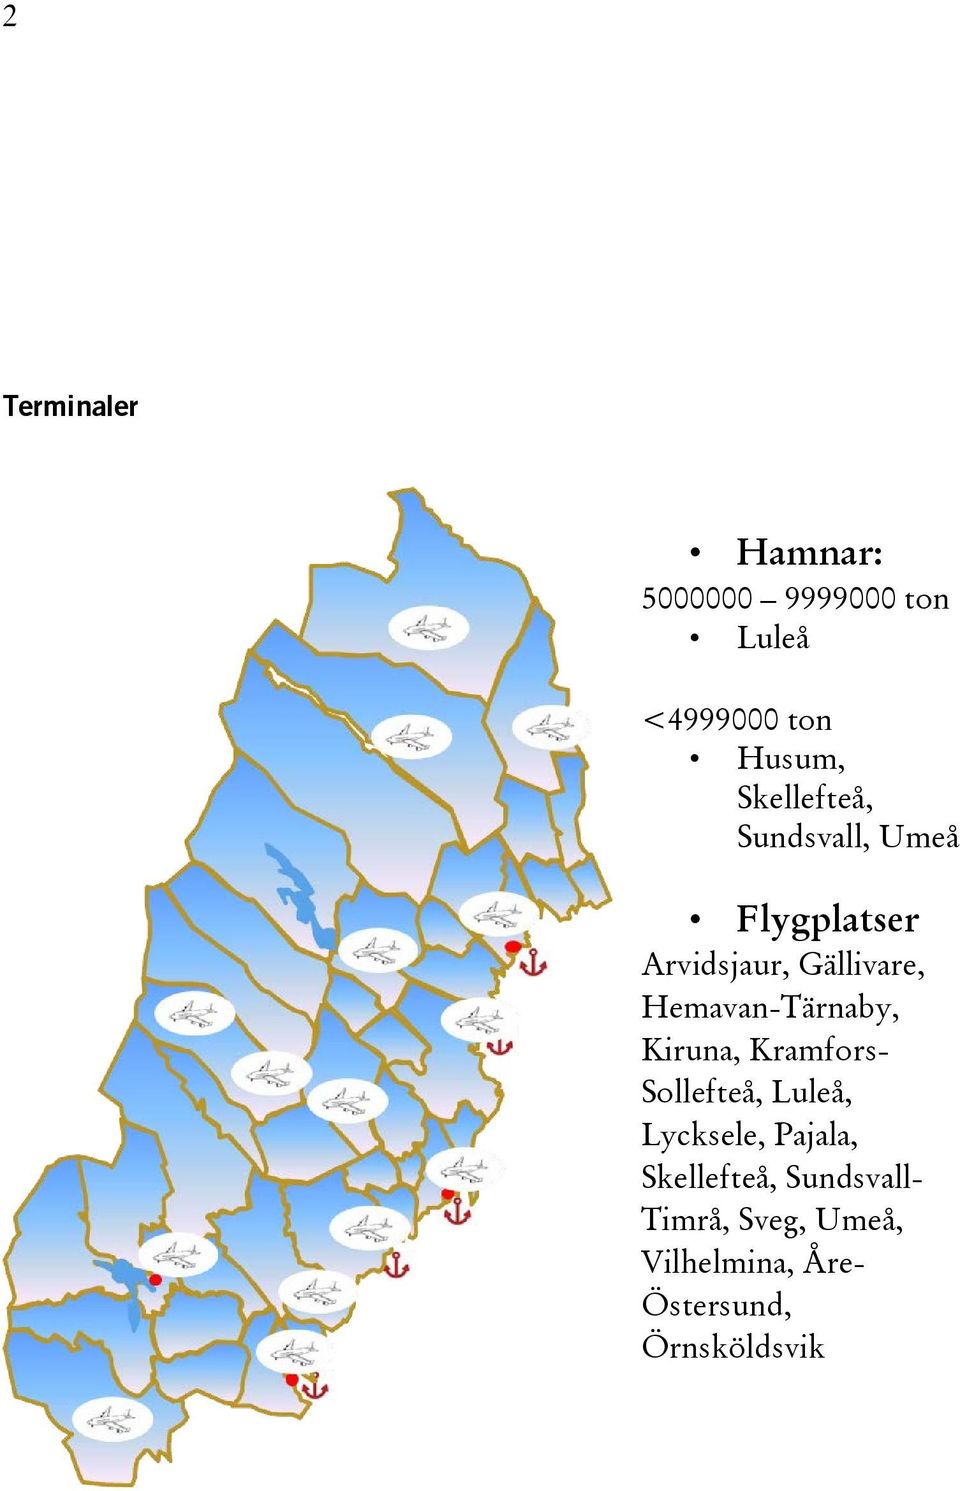 Hemavan-Tärnaby, Kiruna, Kramfors- Sollefteå, Luleå, Lycksele, Pajala,